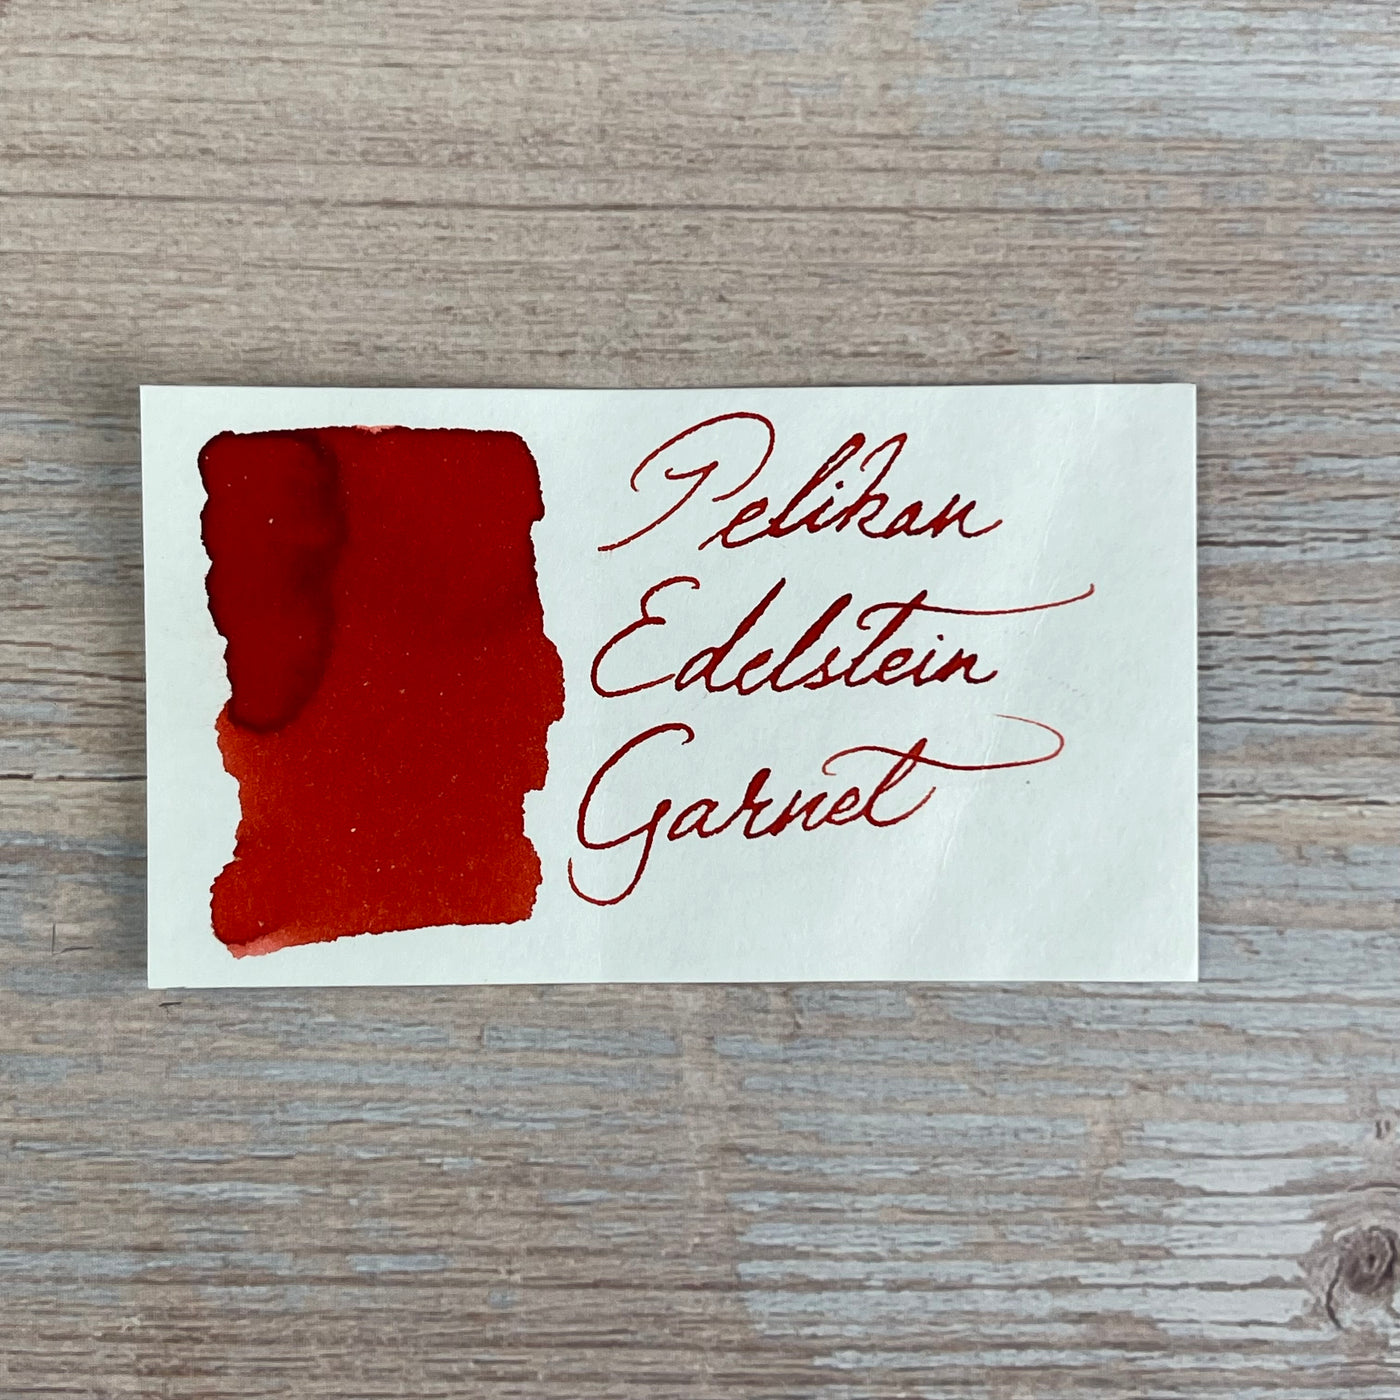 Pelikan Edelstein Garnet - 50ml Bottled Ink